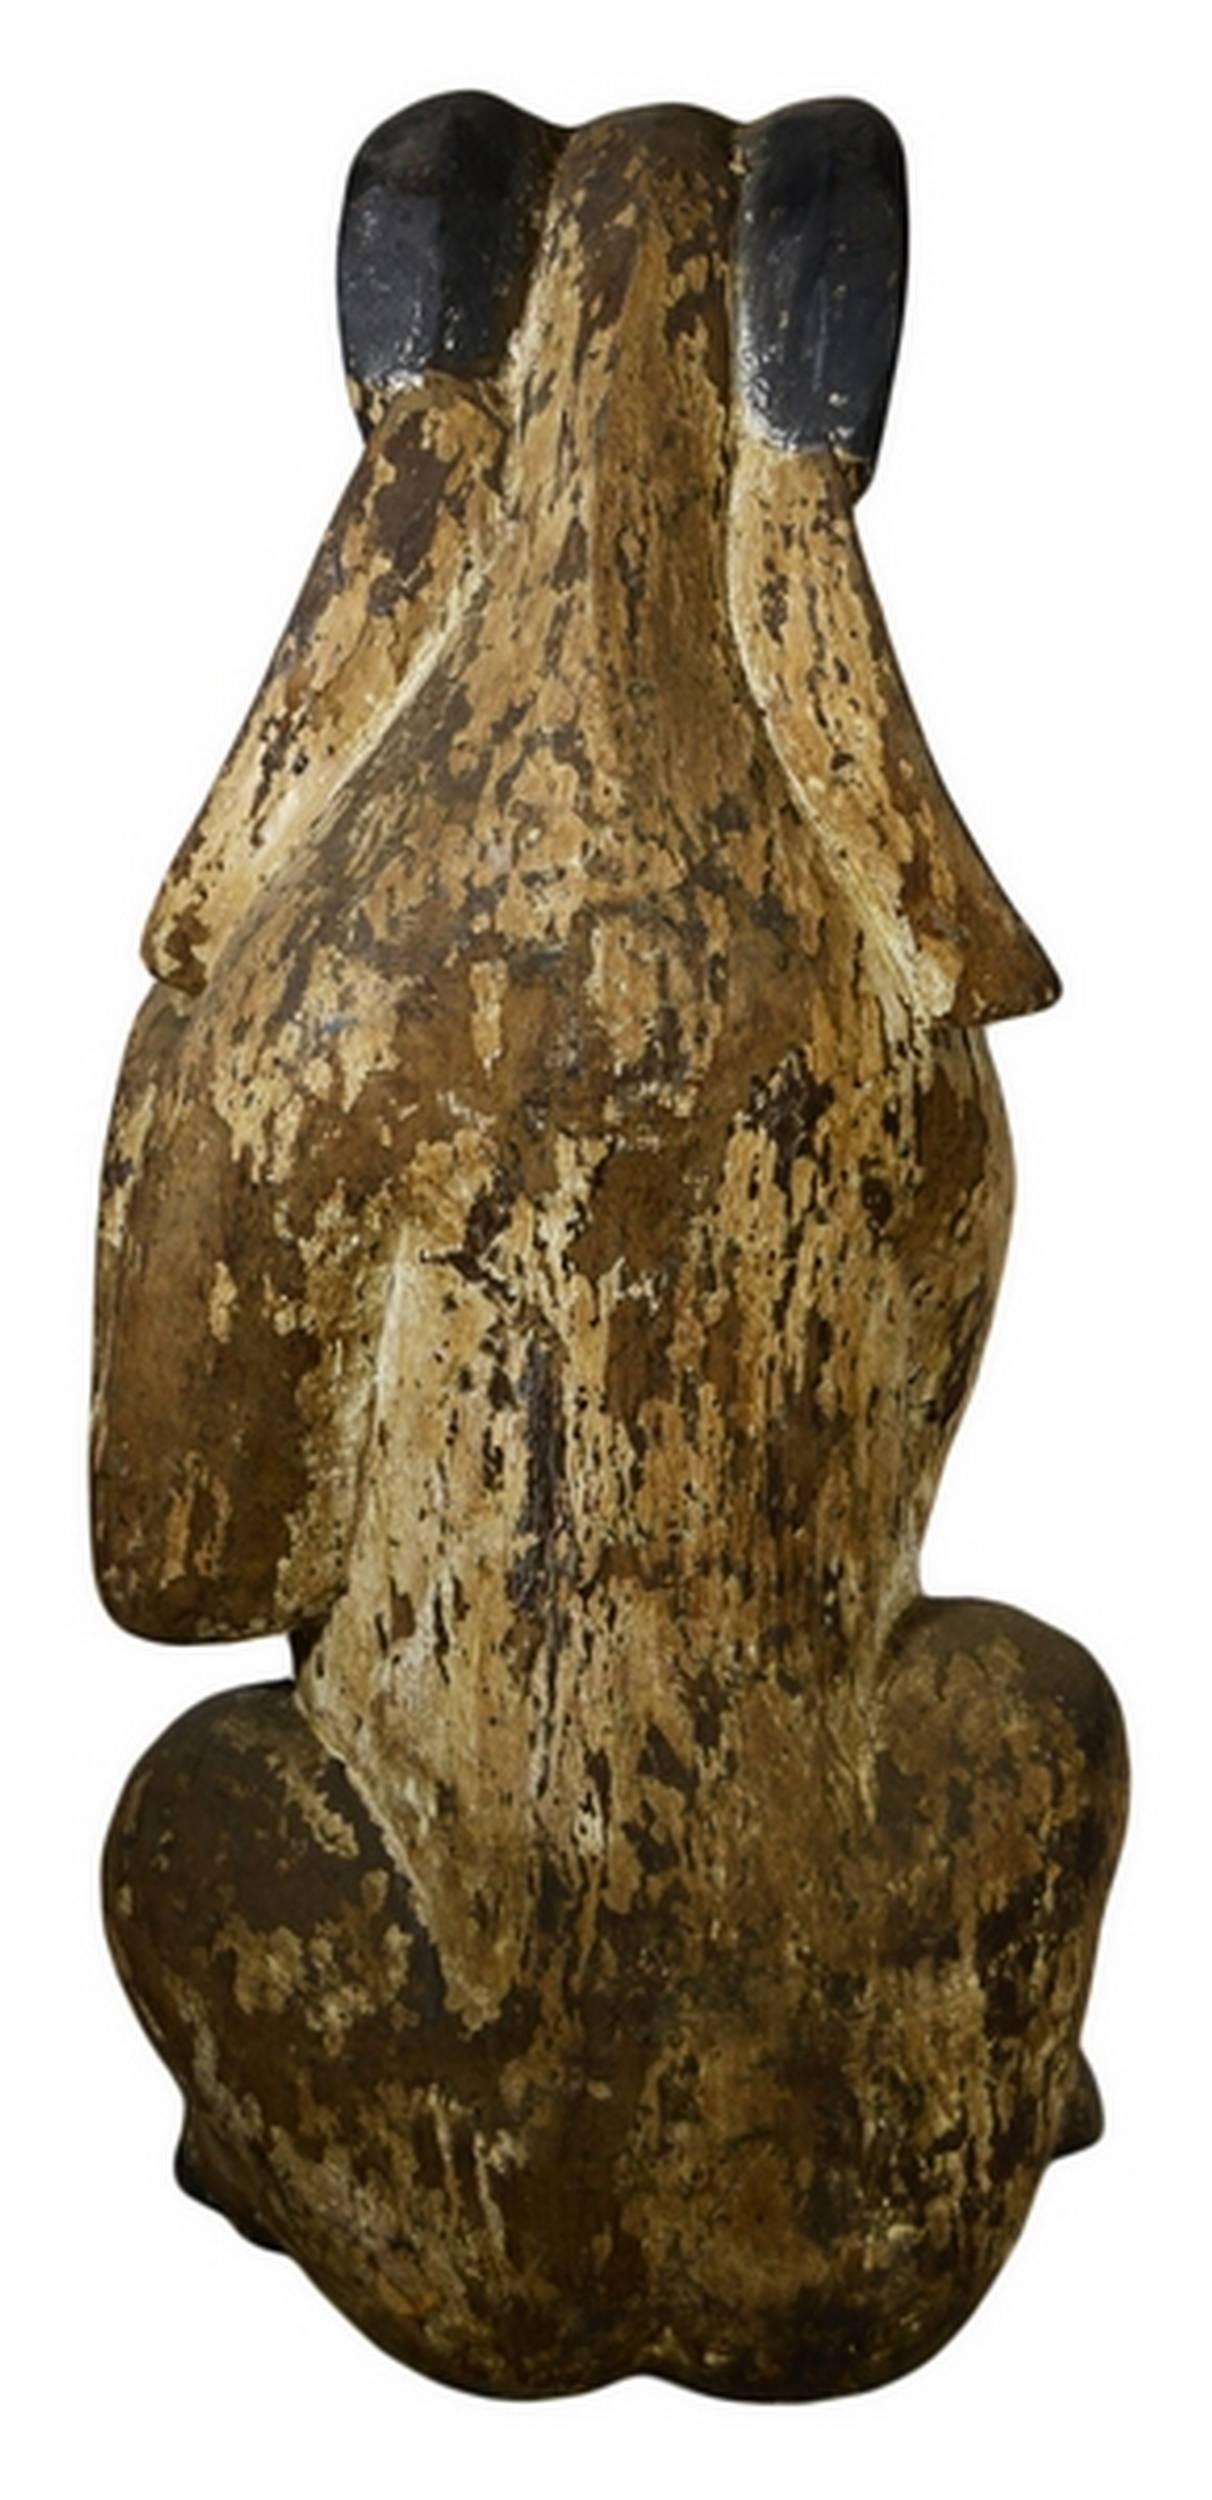 Statue de chèvre assise du XIXe siècle, sculptée à la main dans du bois de Birmanie. Cette statue sculptée à la main représente une chèvre, assise sur ses pattes arrière, les pattes avant relevées dans une position proche de celle d'un écureuil.